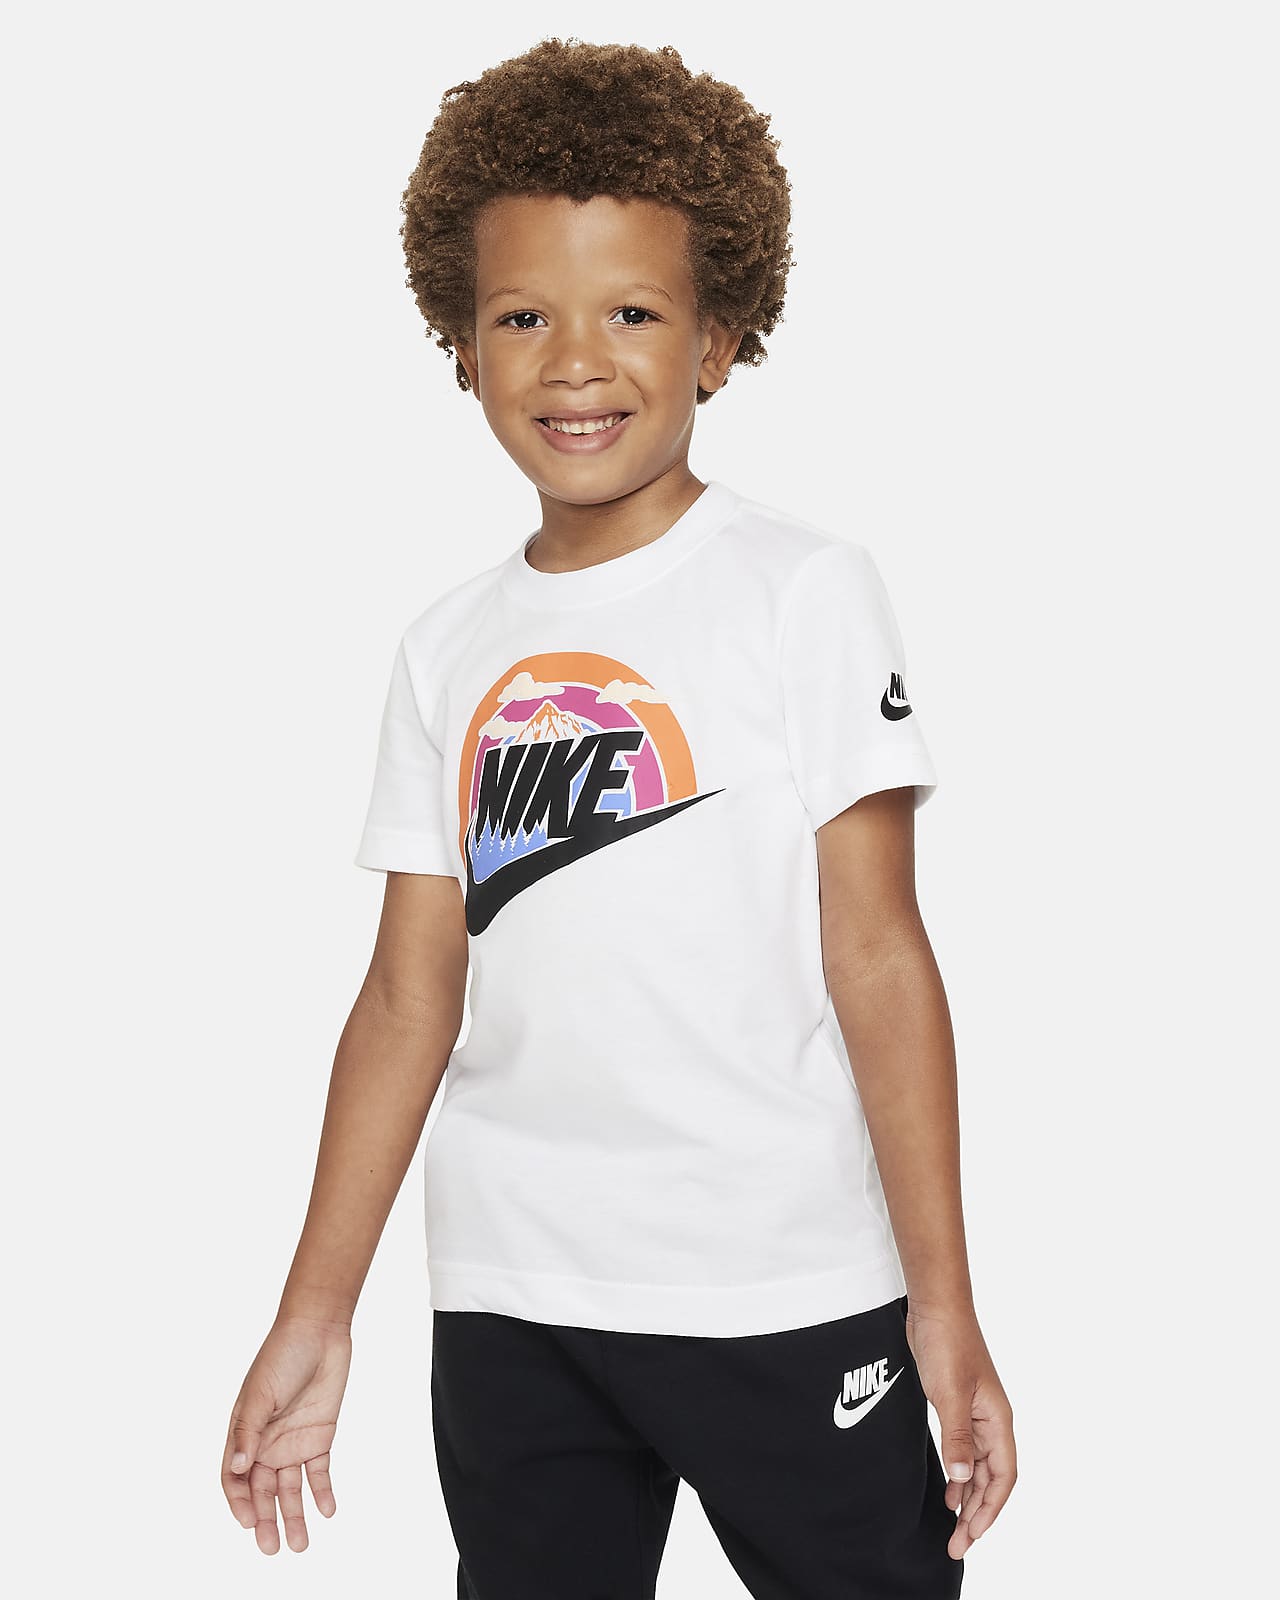 Wilderness Little Kids Tee T-Shirt. Nike Futura